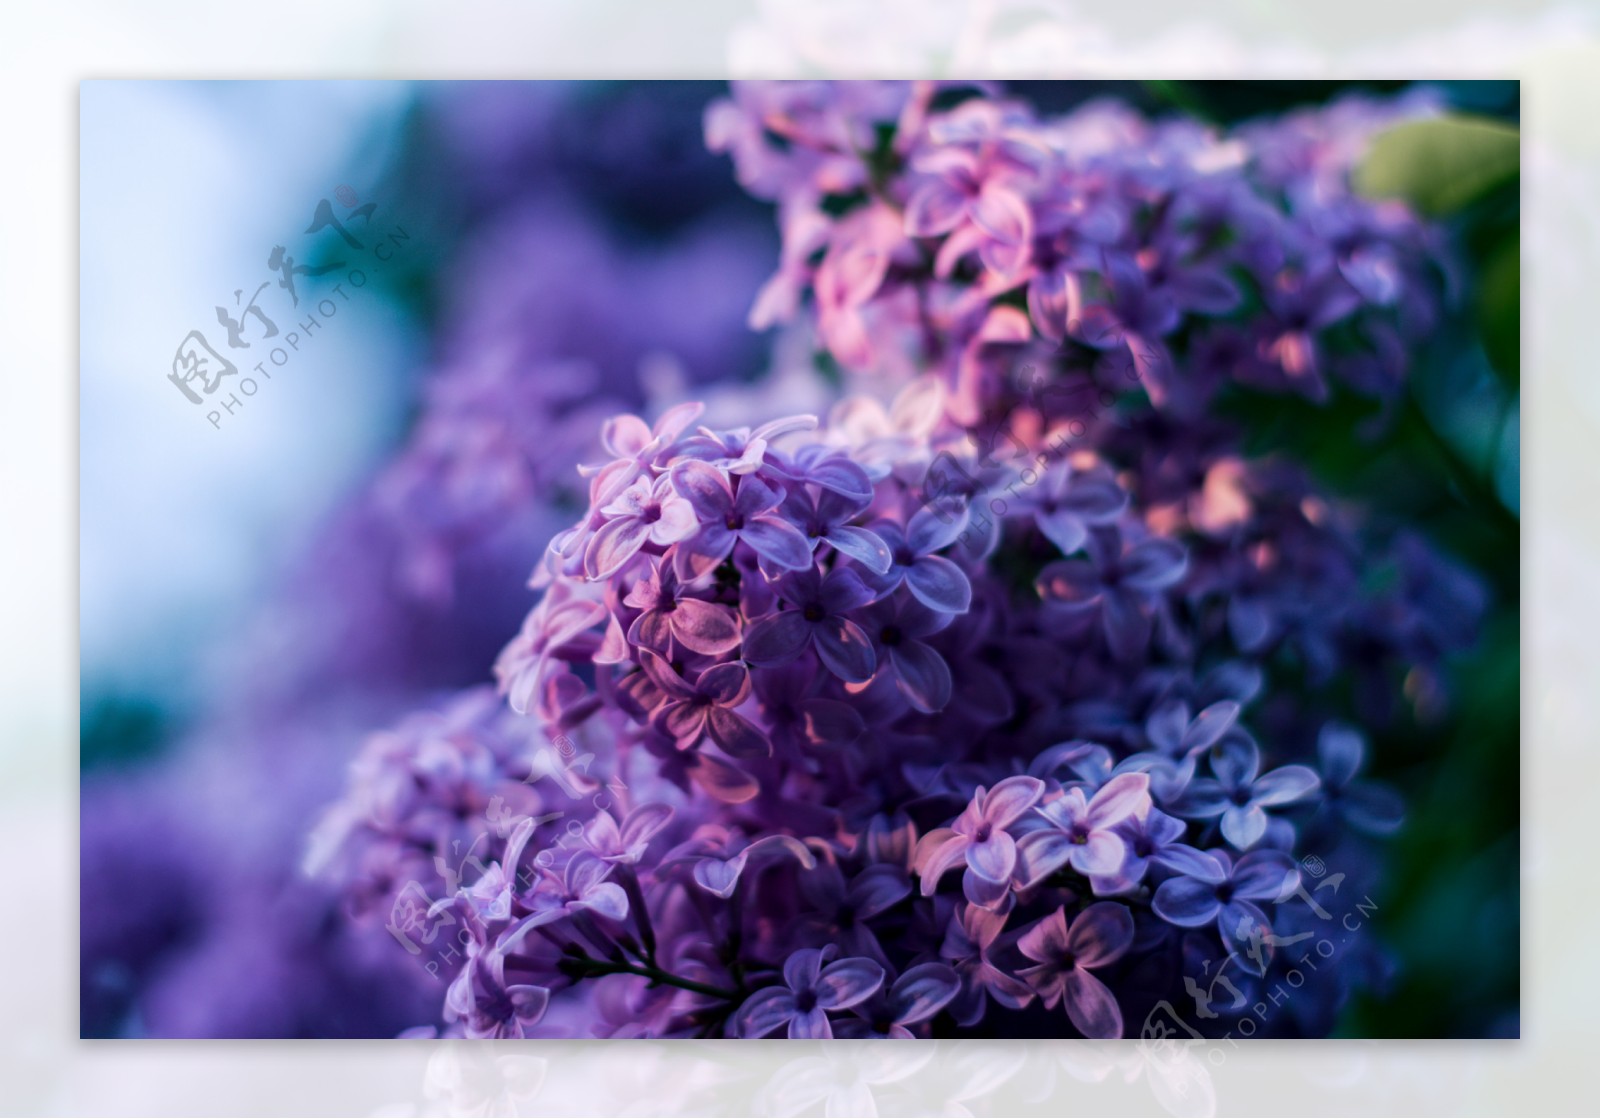 唯美紫丁香花图片